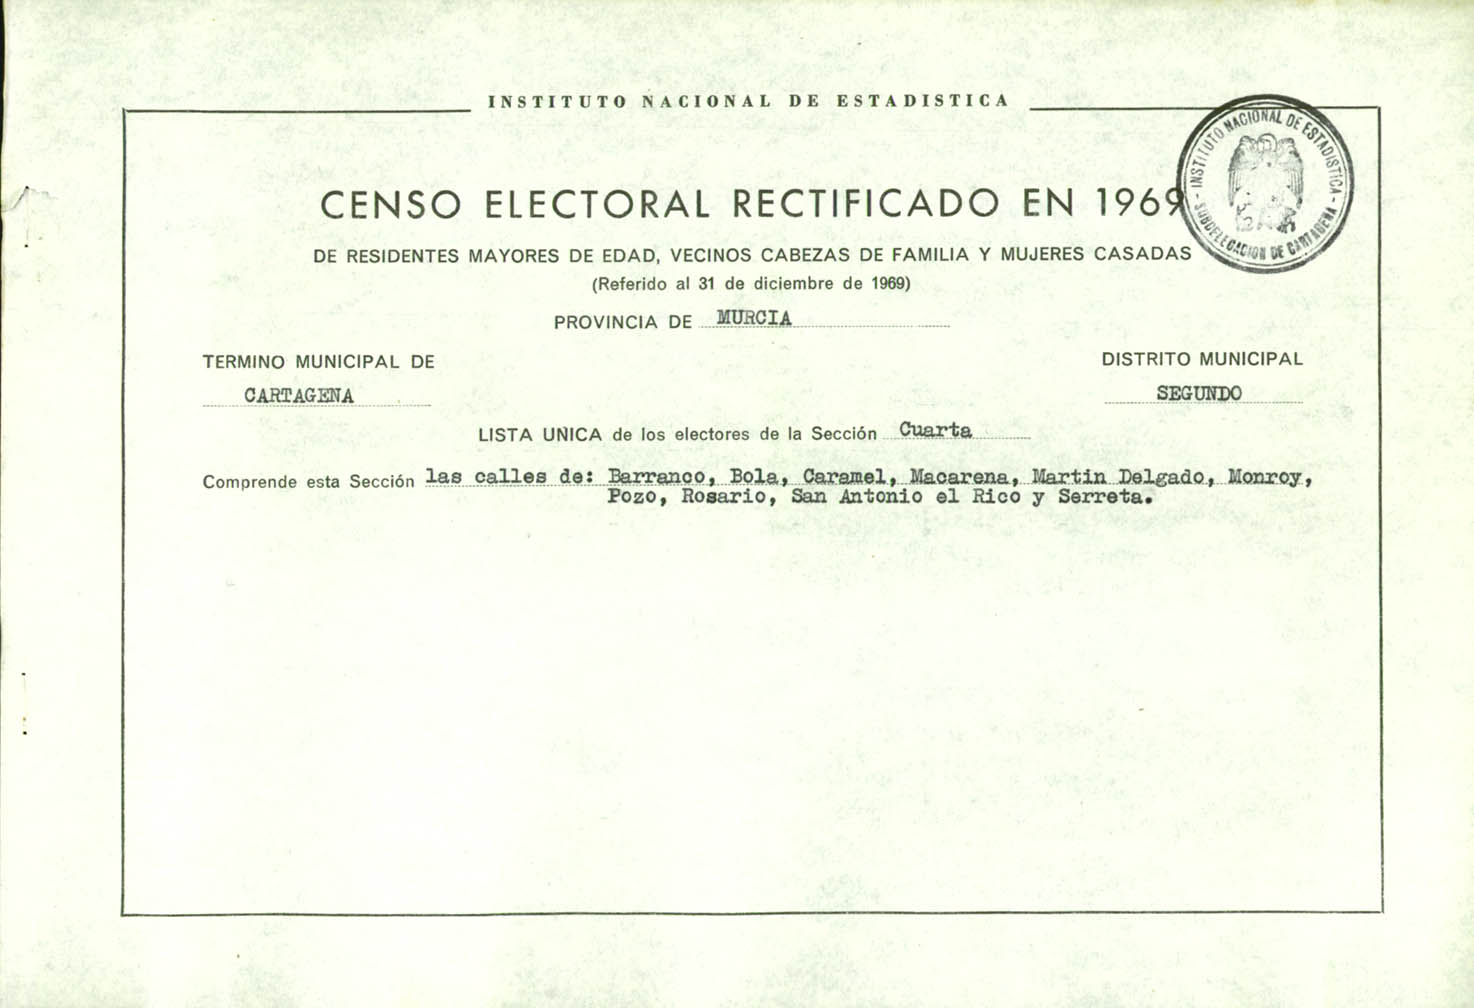 Censo electoral rectificado en 1969: listas definitivas de Cartagena, Distrito 2º, sección 4º.